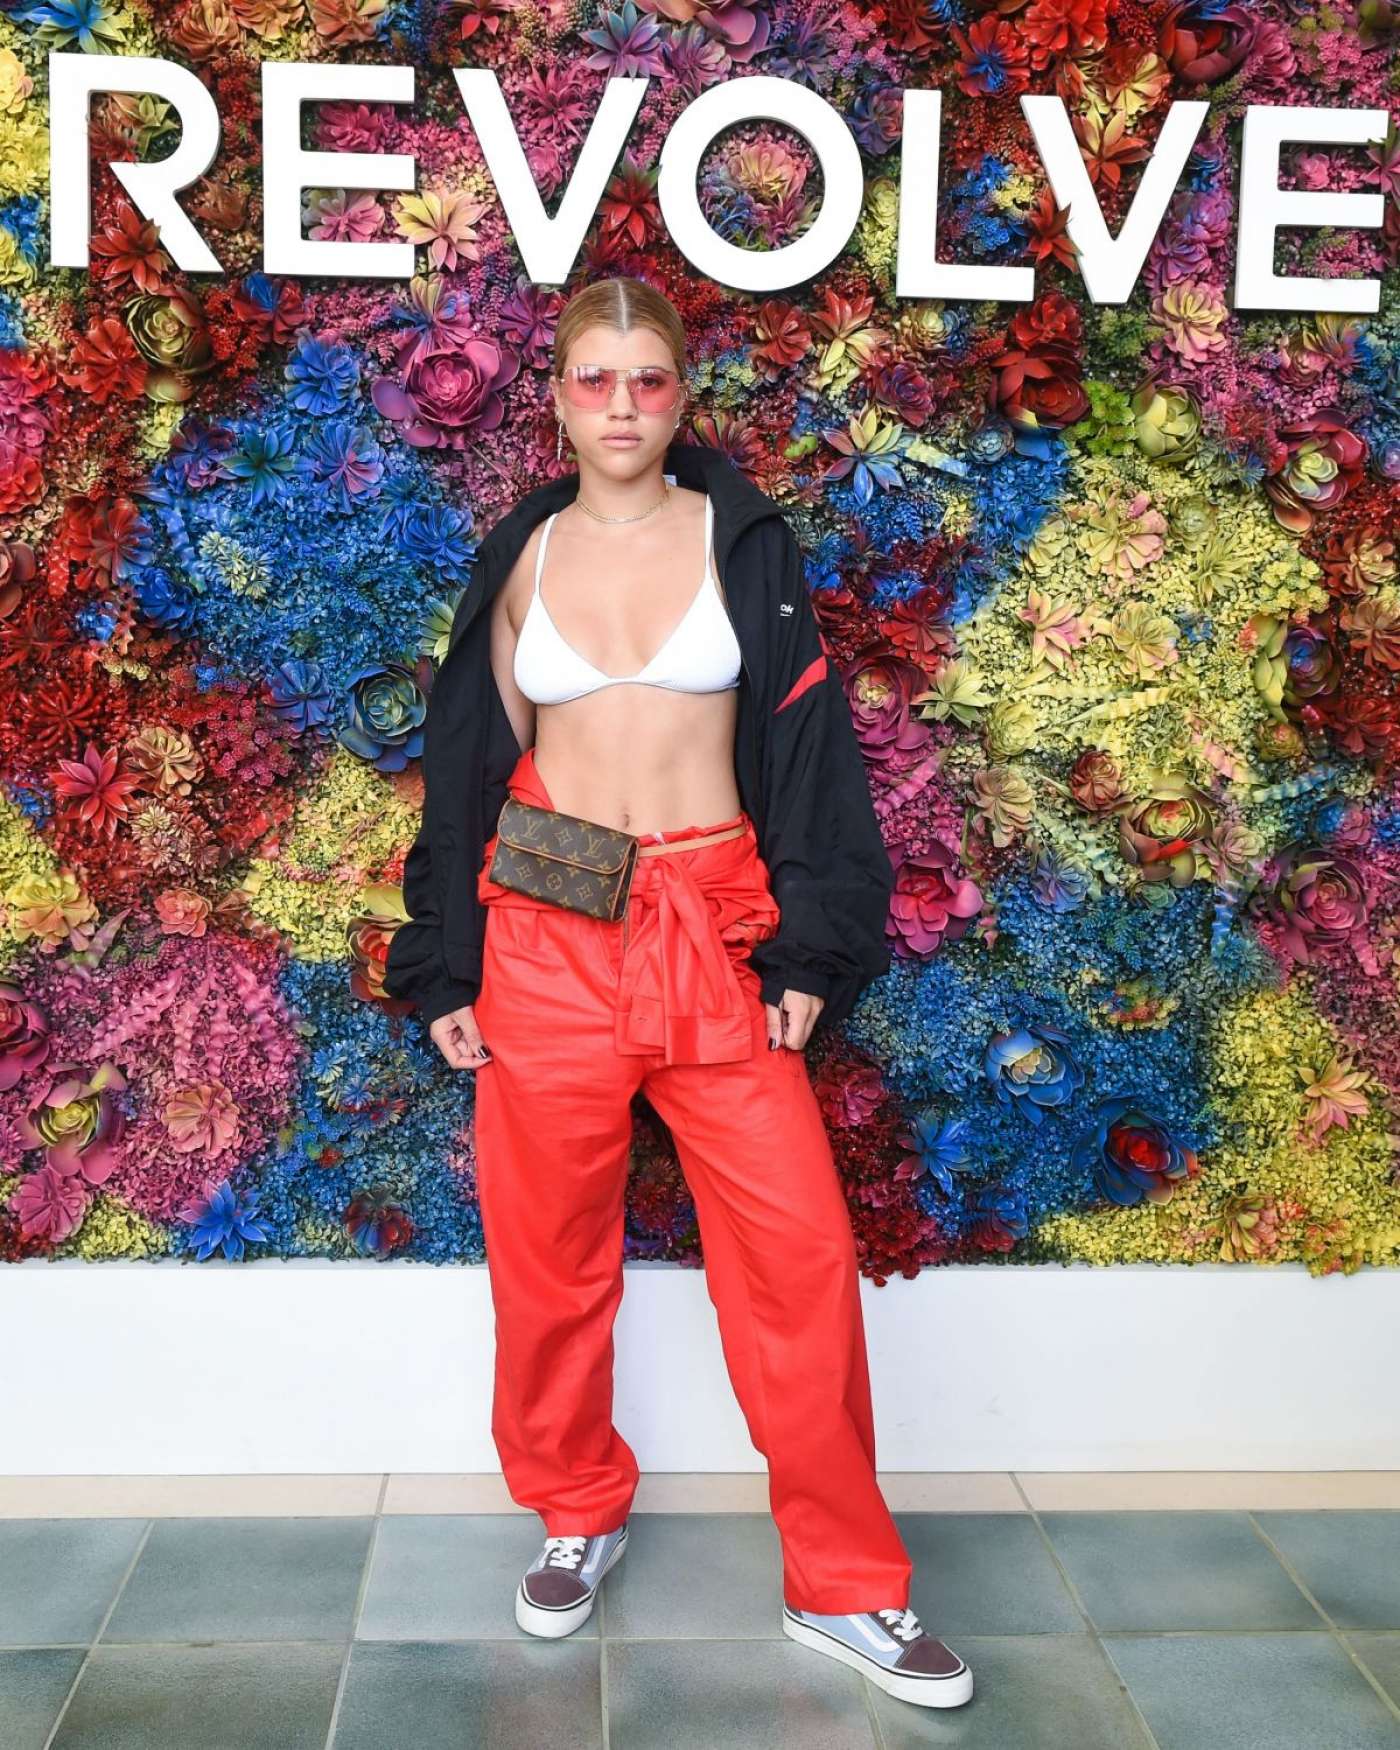 Sofia Richie 2017 : Sofia Richie: Revolve Festival Day 2 at 2017 Coachella -09